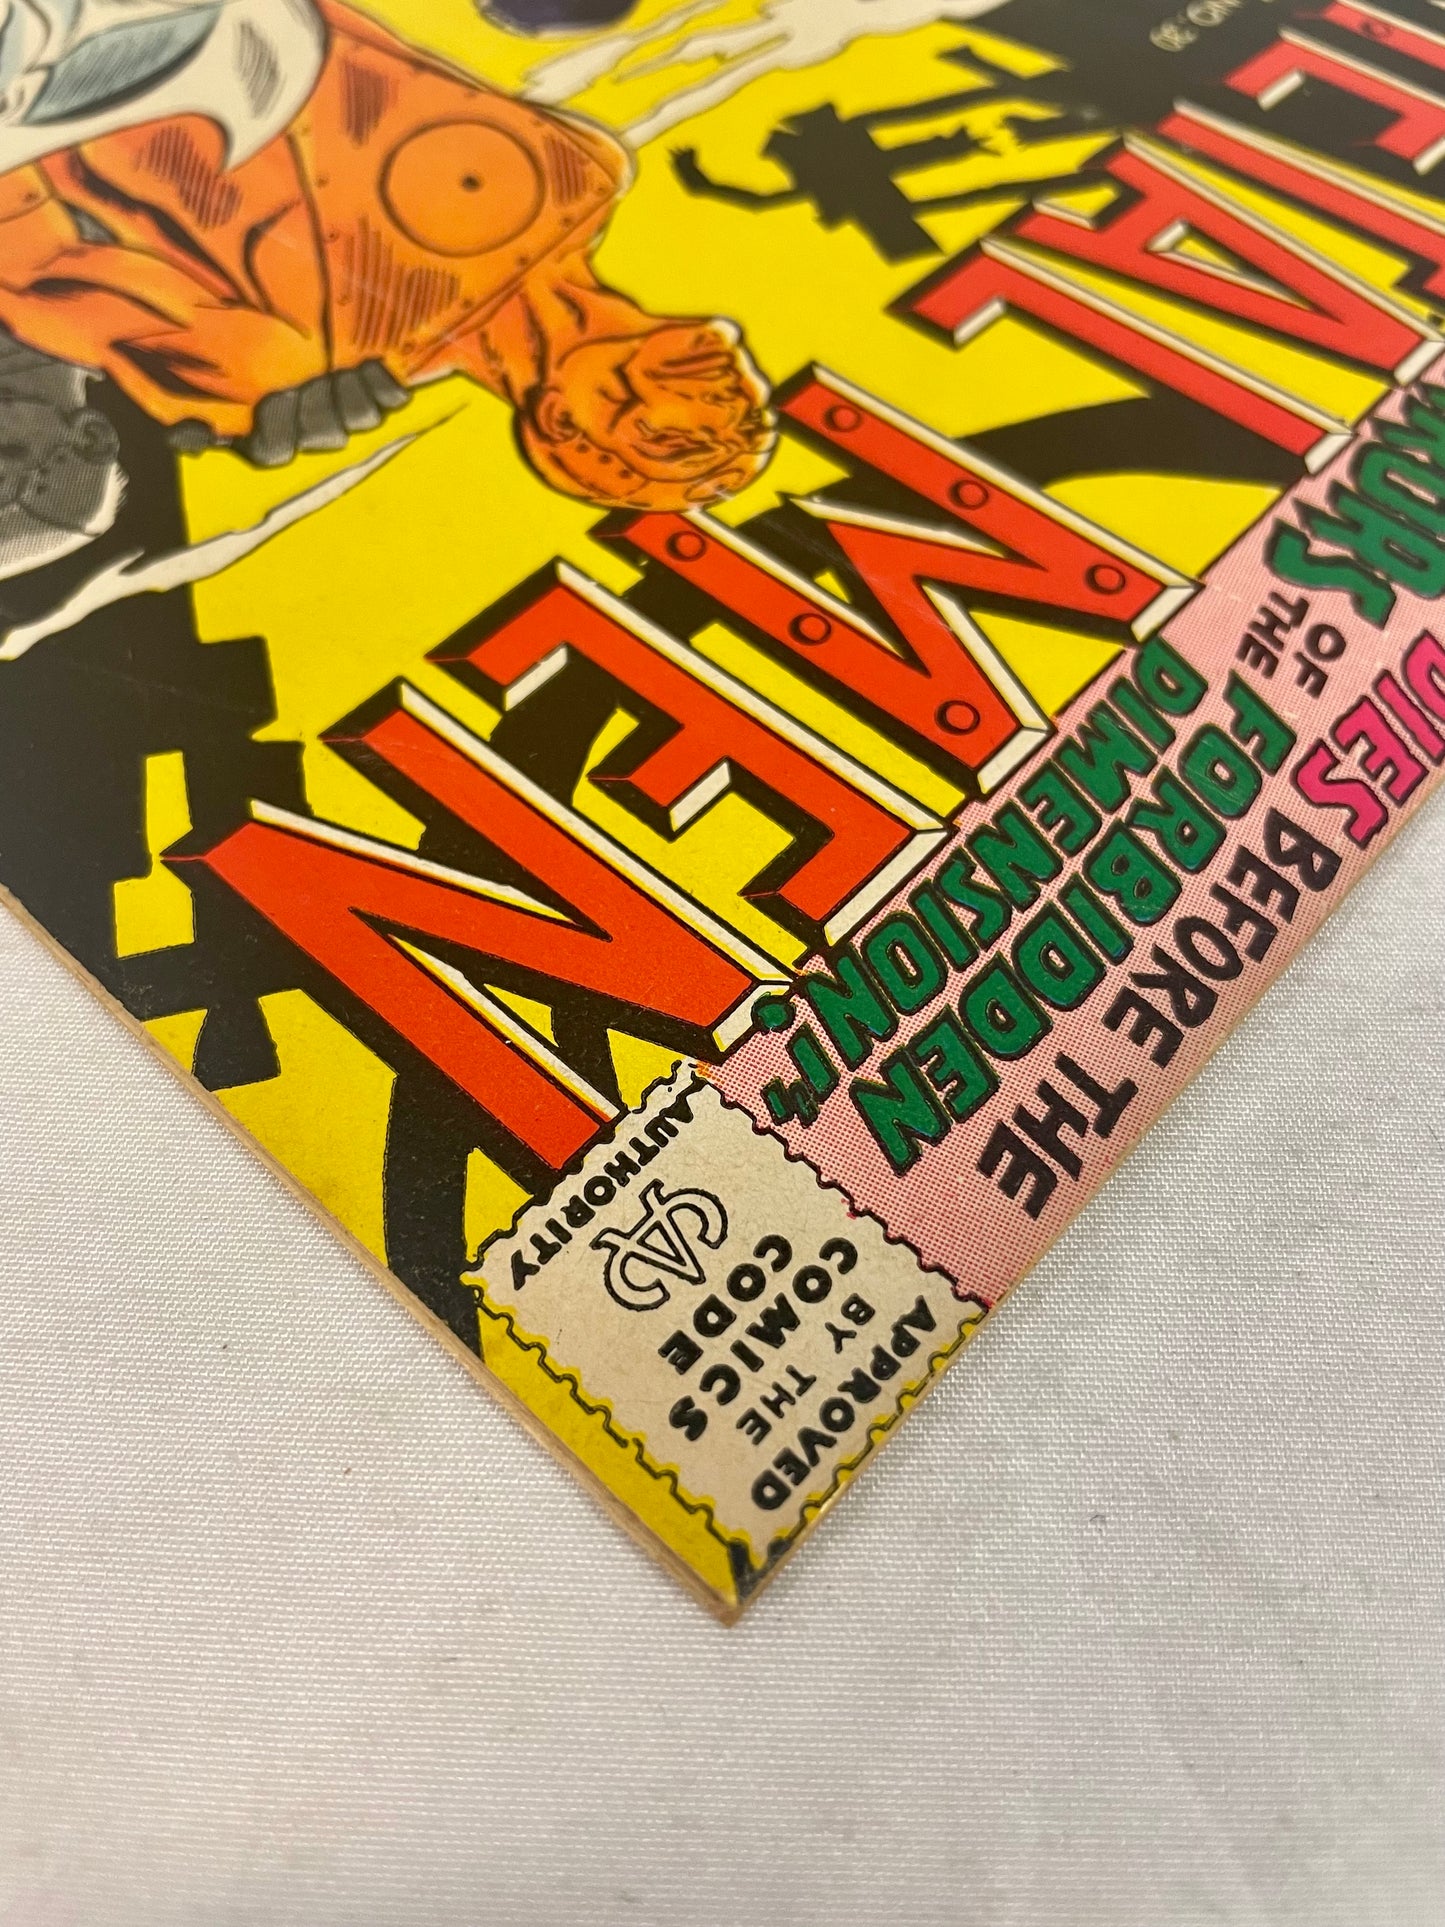 DC Comics Metal Men No. 30